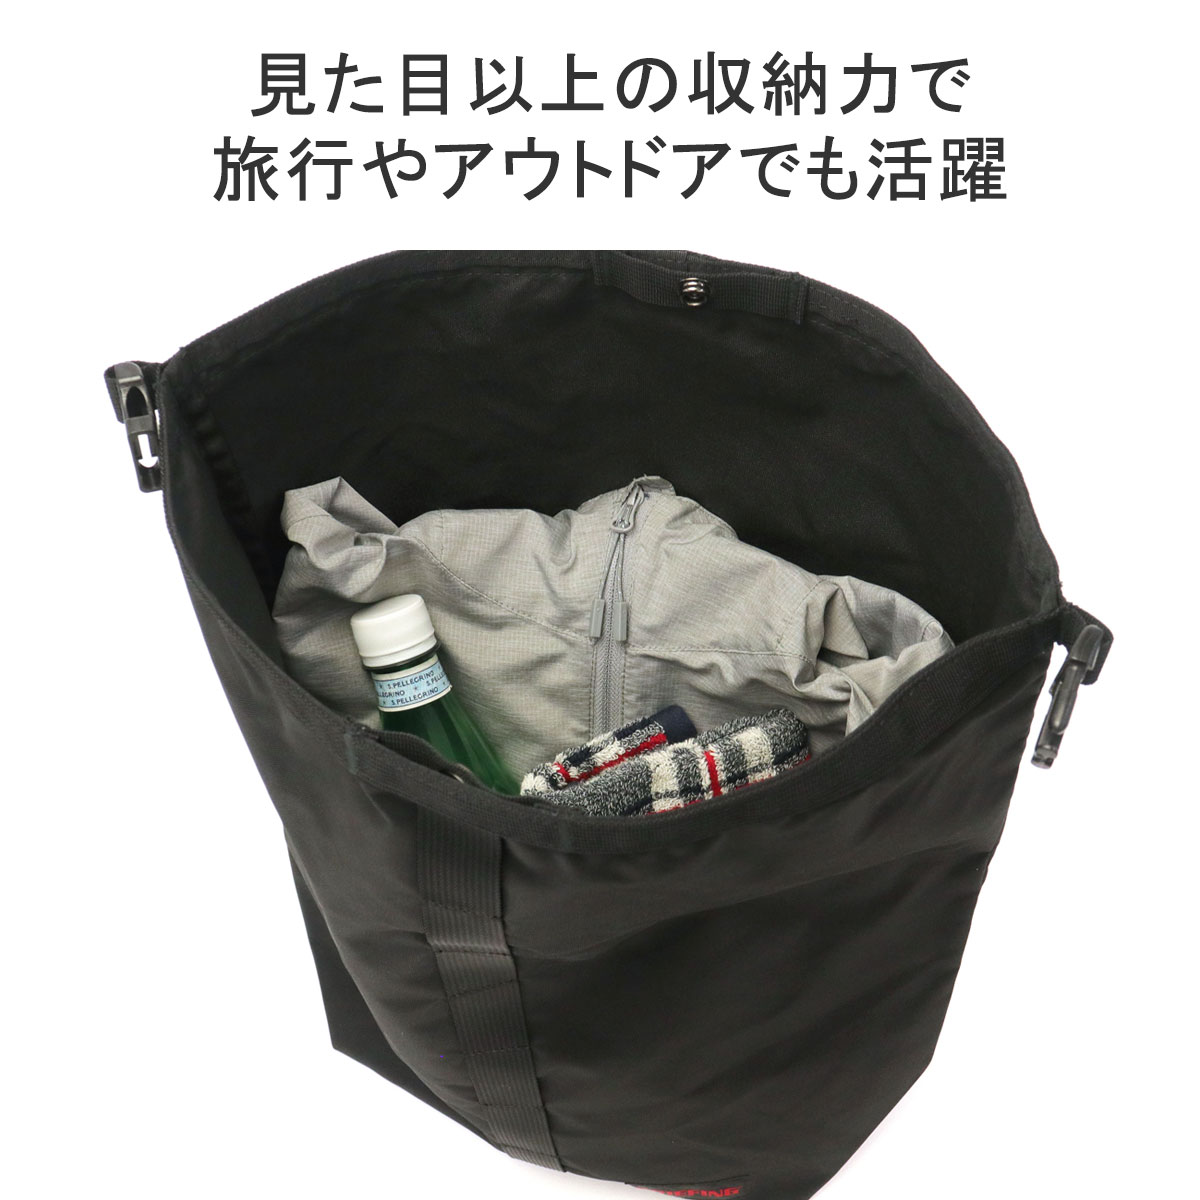 最大42% 12/3限定 日本正規品 ブリーフィング トートバッグ メンズ